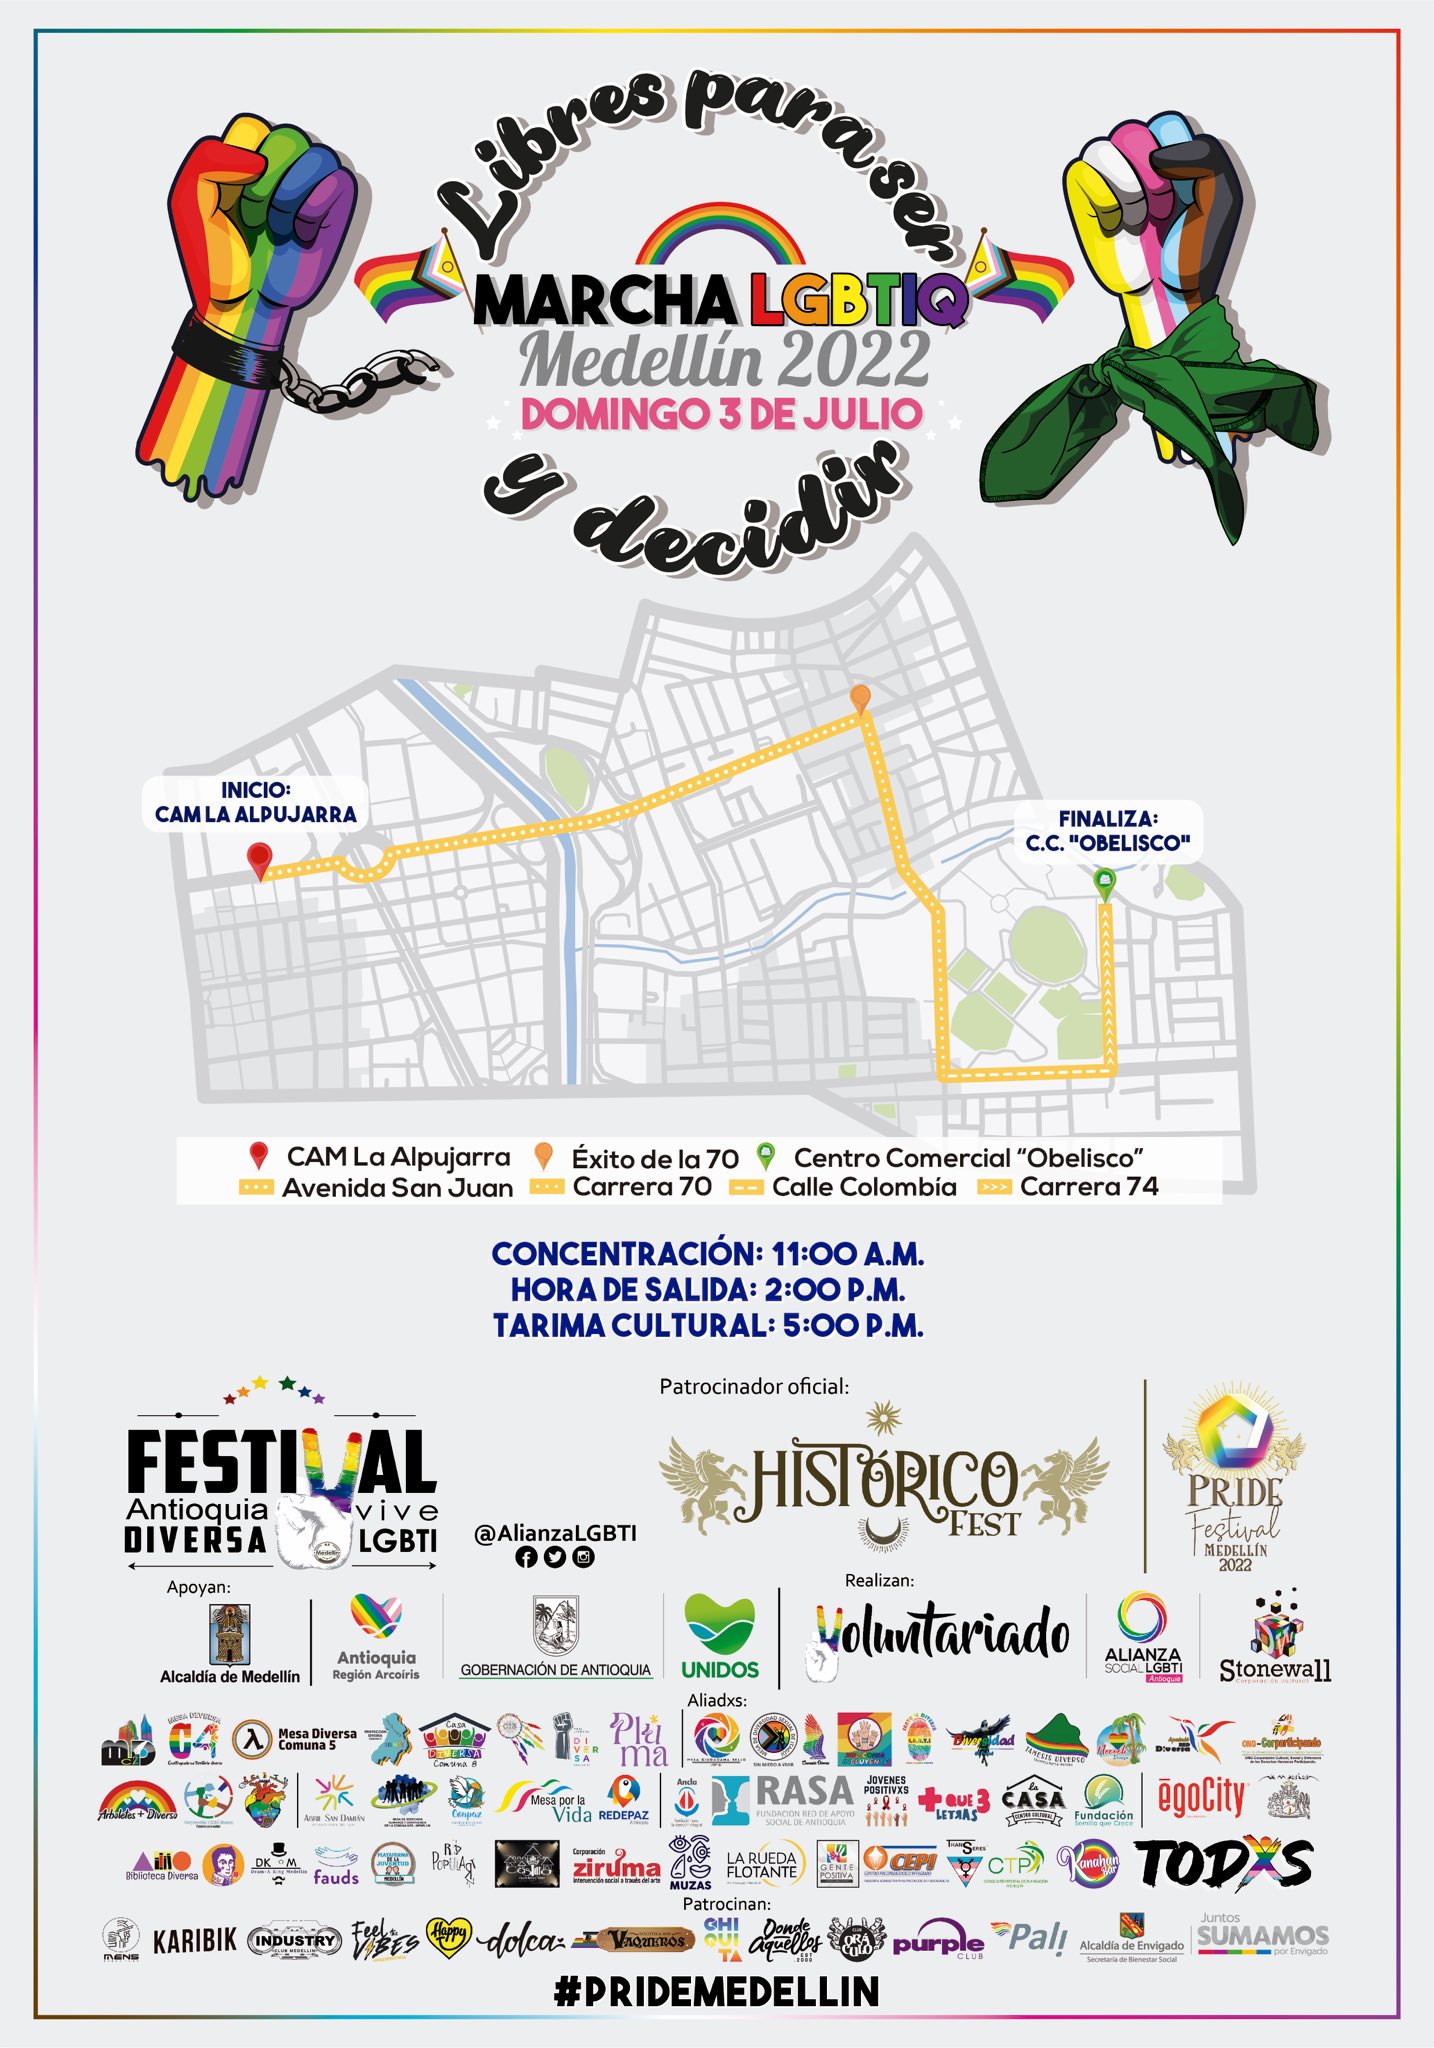  Marcha LGBTIQ Medellin 2022 